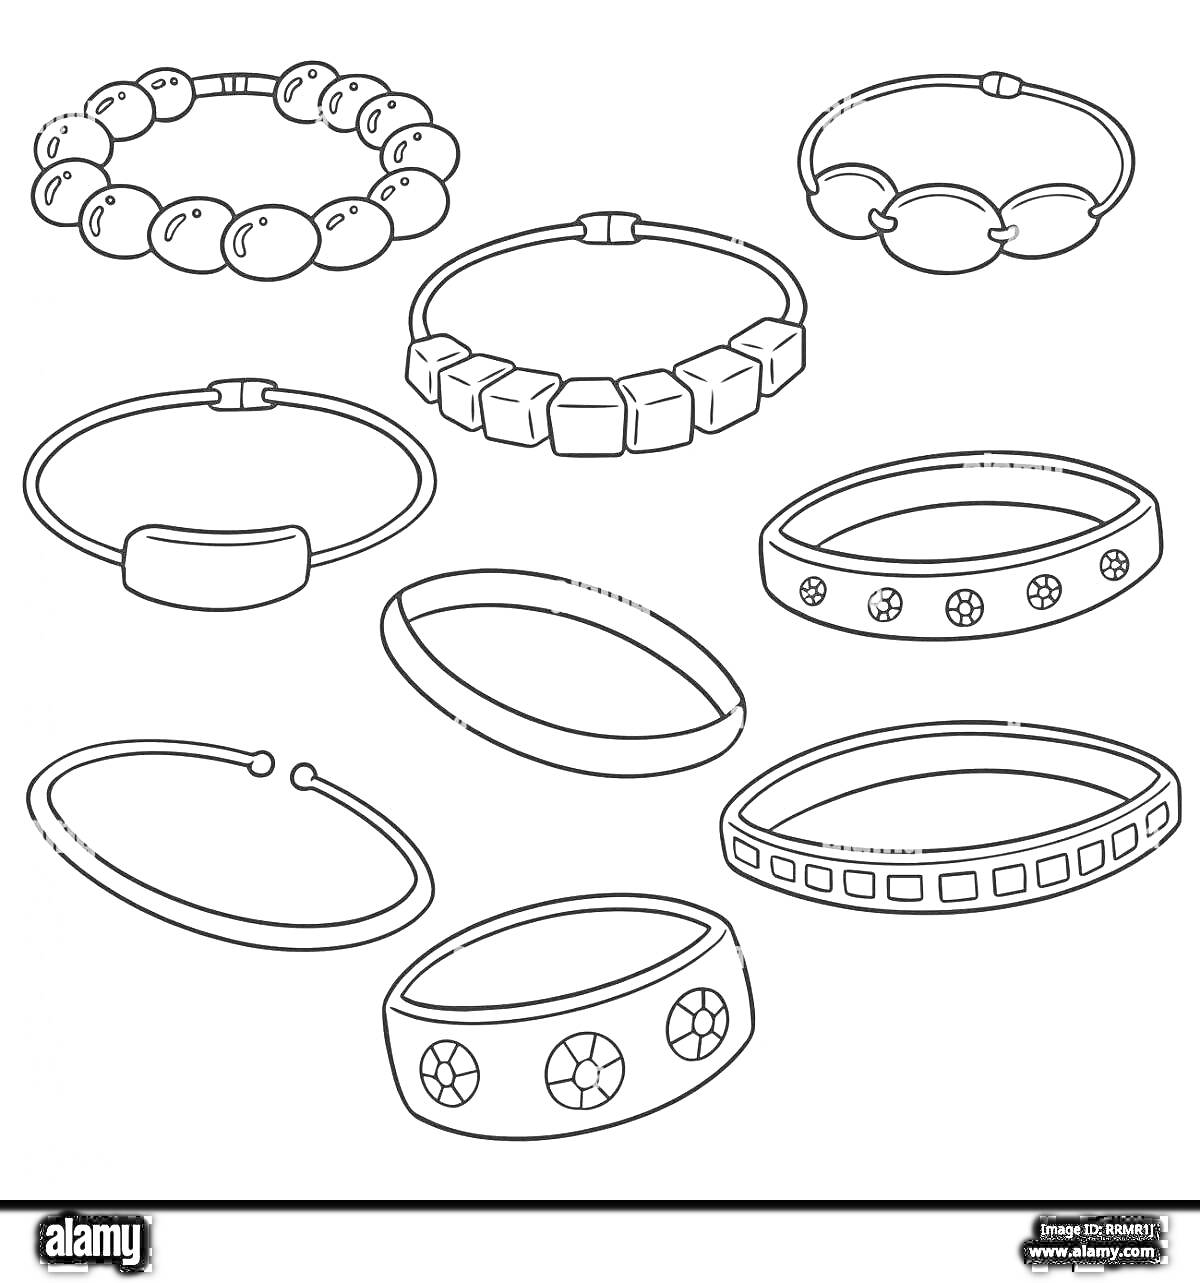 Раскраска Браслеты и кольца с различными декоративными элементами